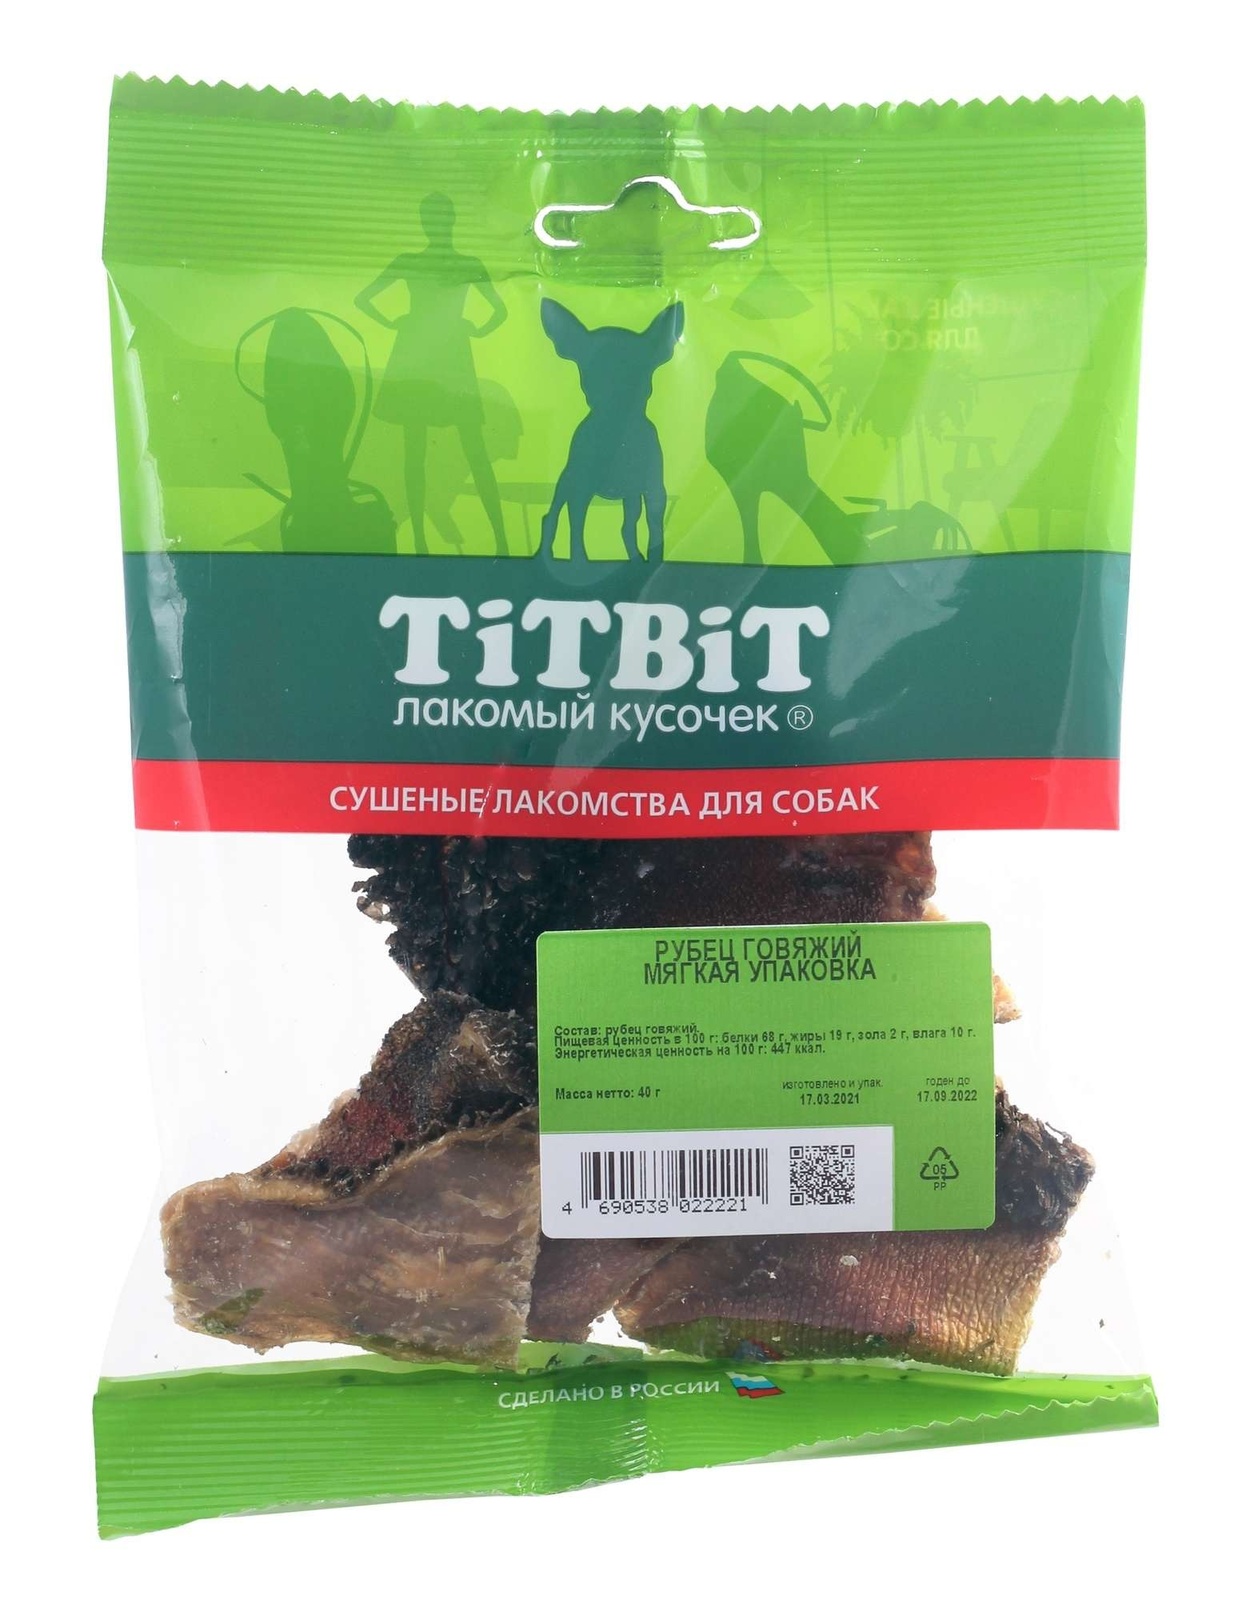 TiTBiT TiTBiT рубец говяжий - мягкая упаковка (40 г) titbit titbit хвост говяжий большой мягкая упаковка 70 г